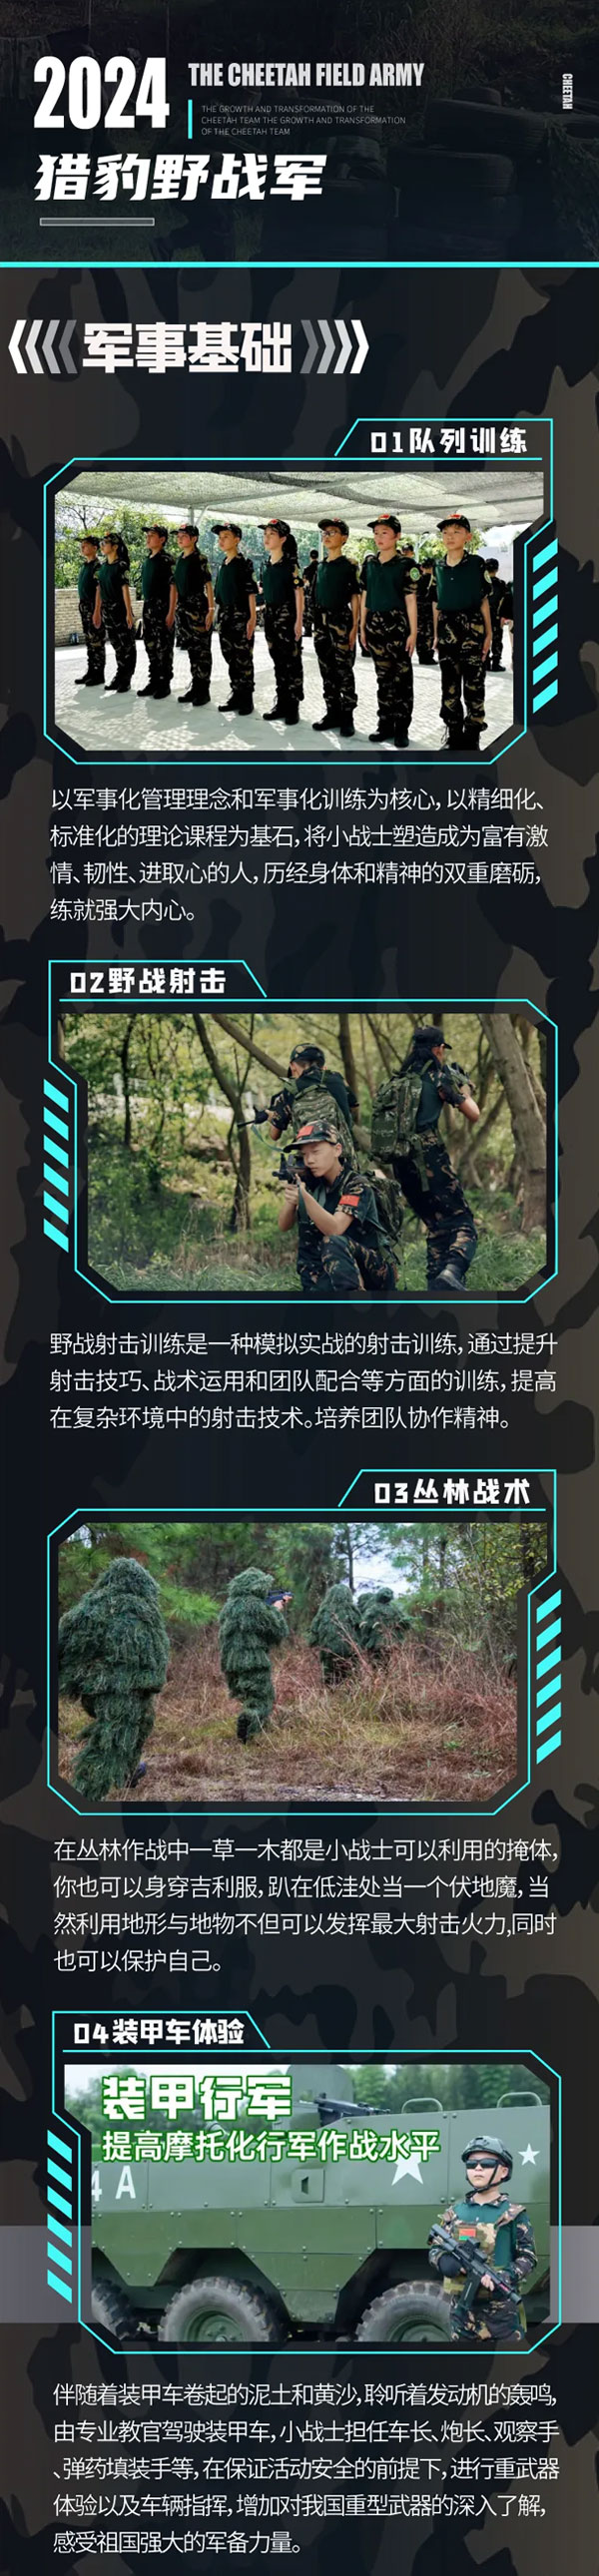 北京猎豹野战军夏令营